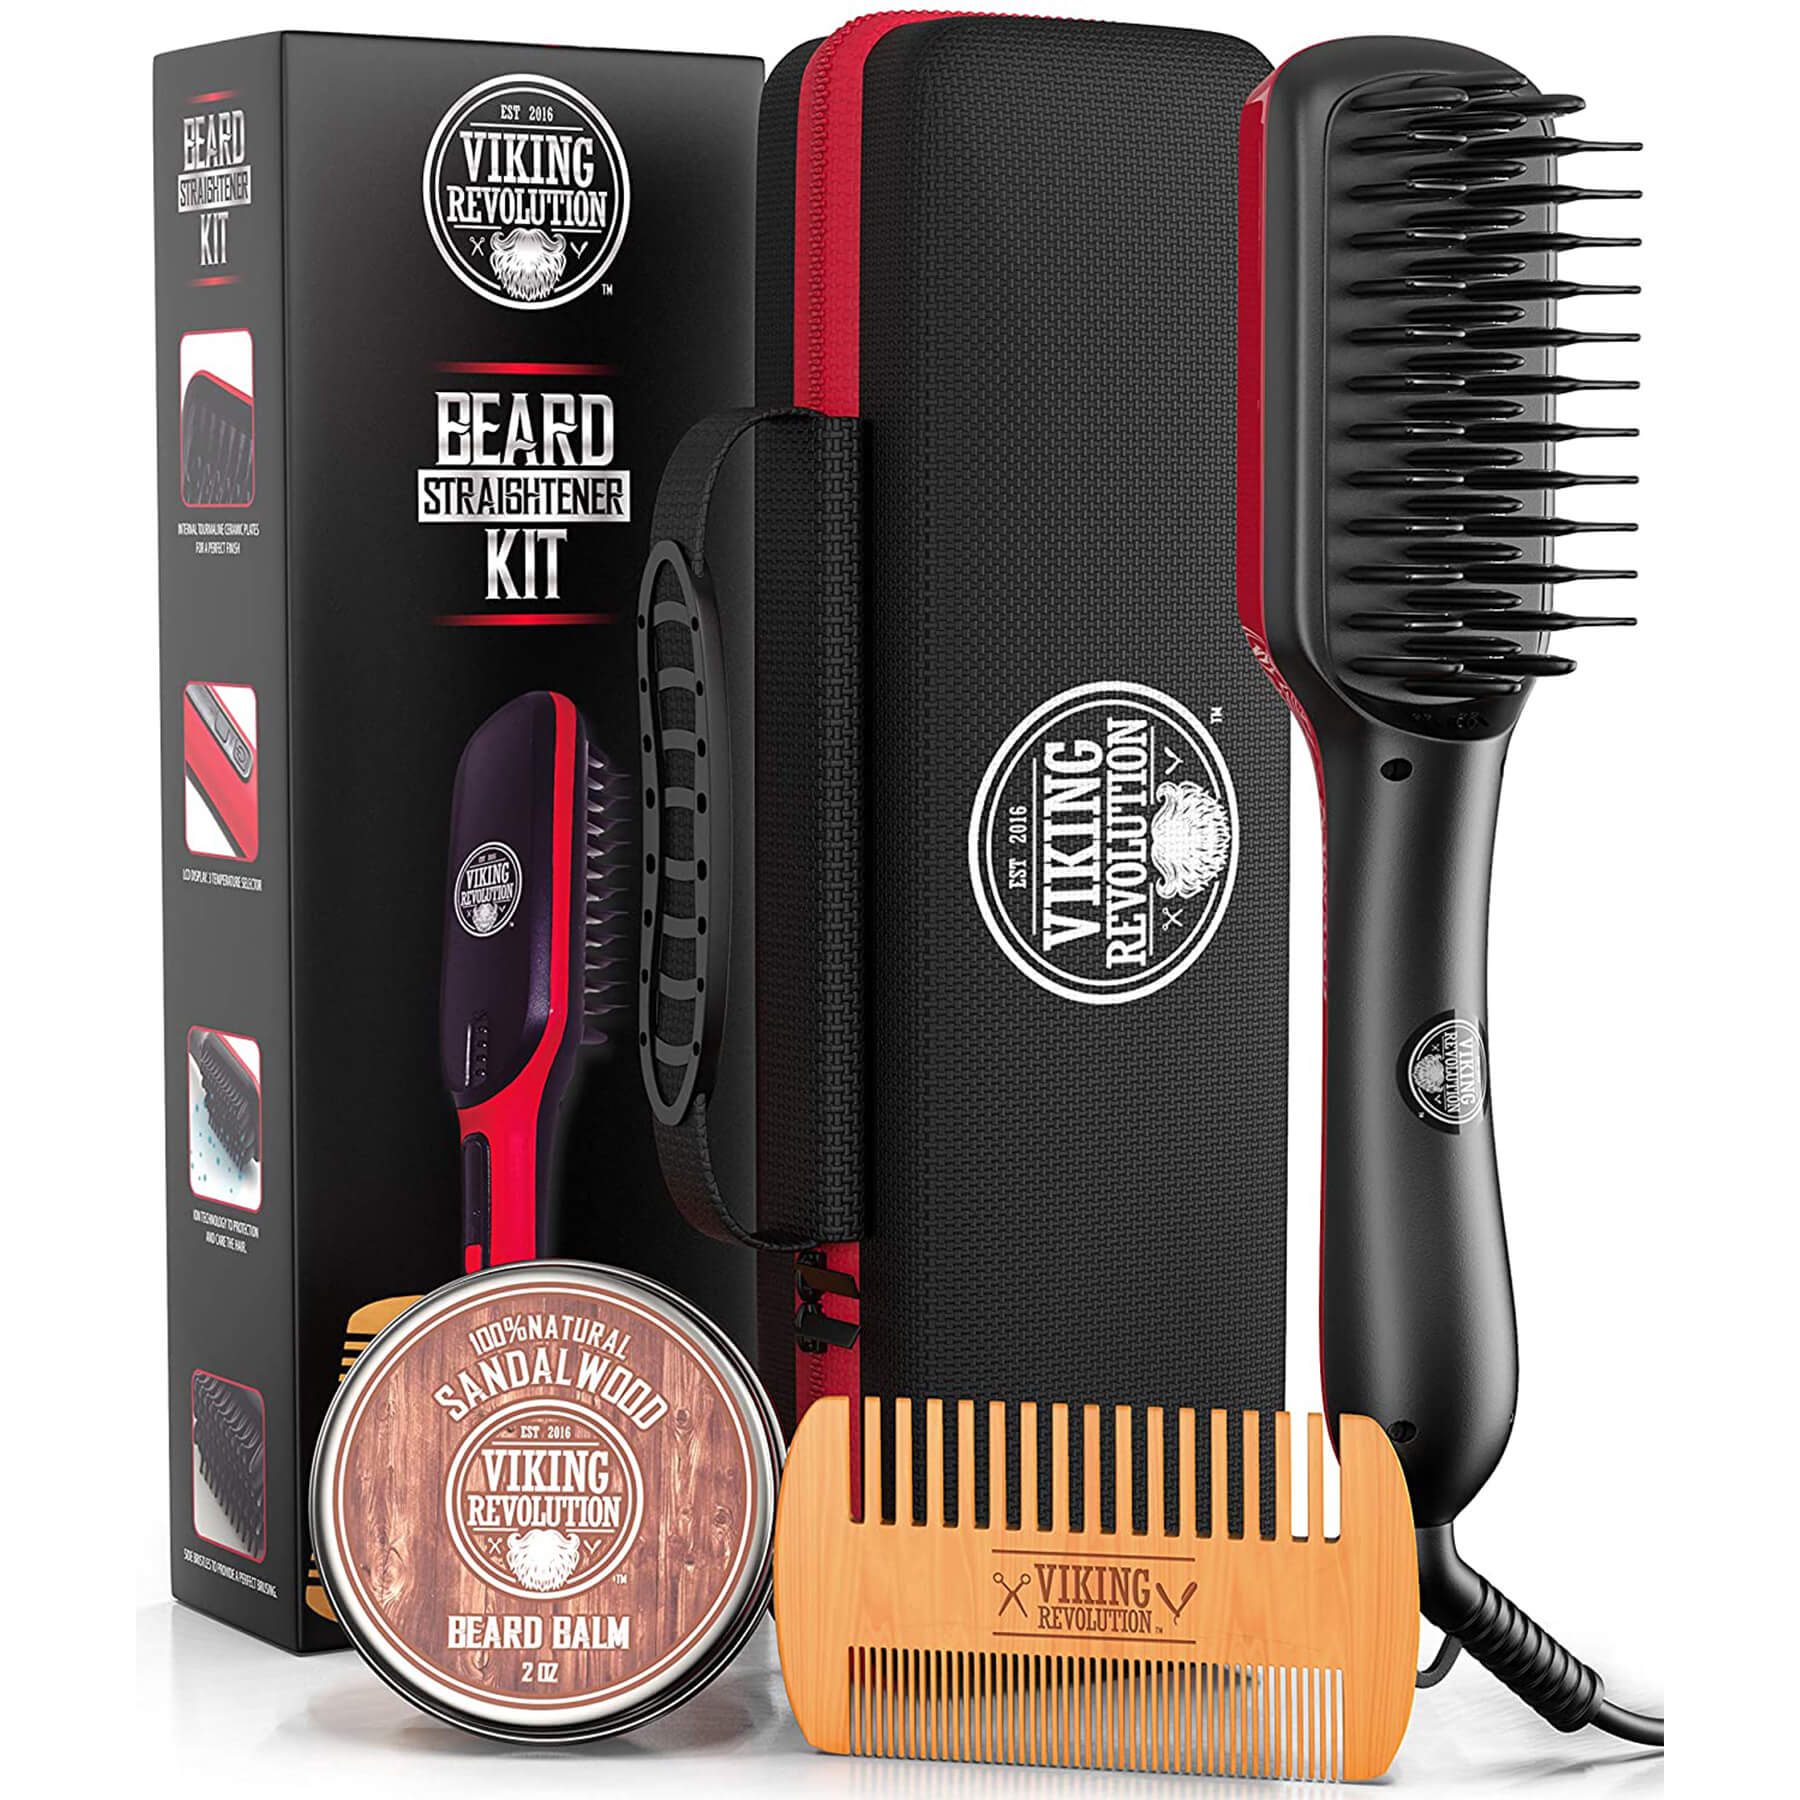 Ionic Beard Straightener Brush – Rapid Beard